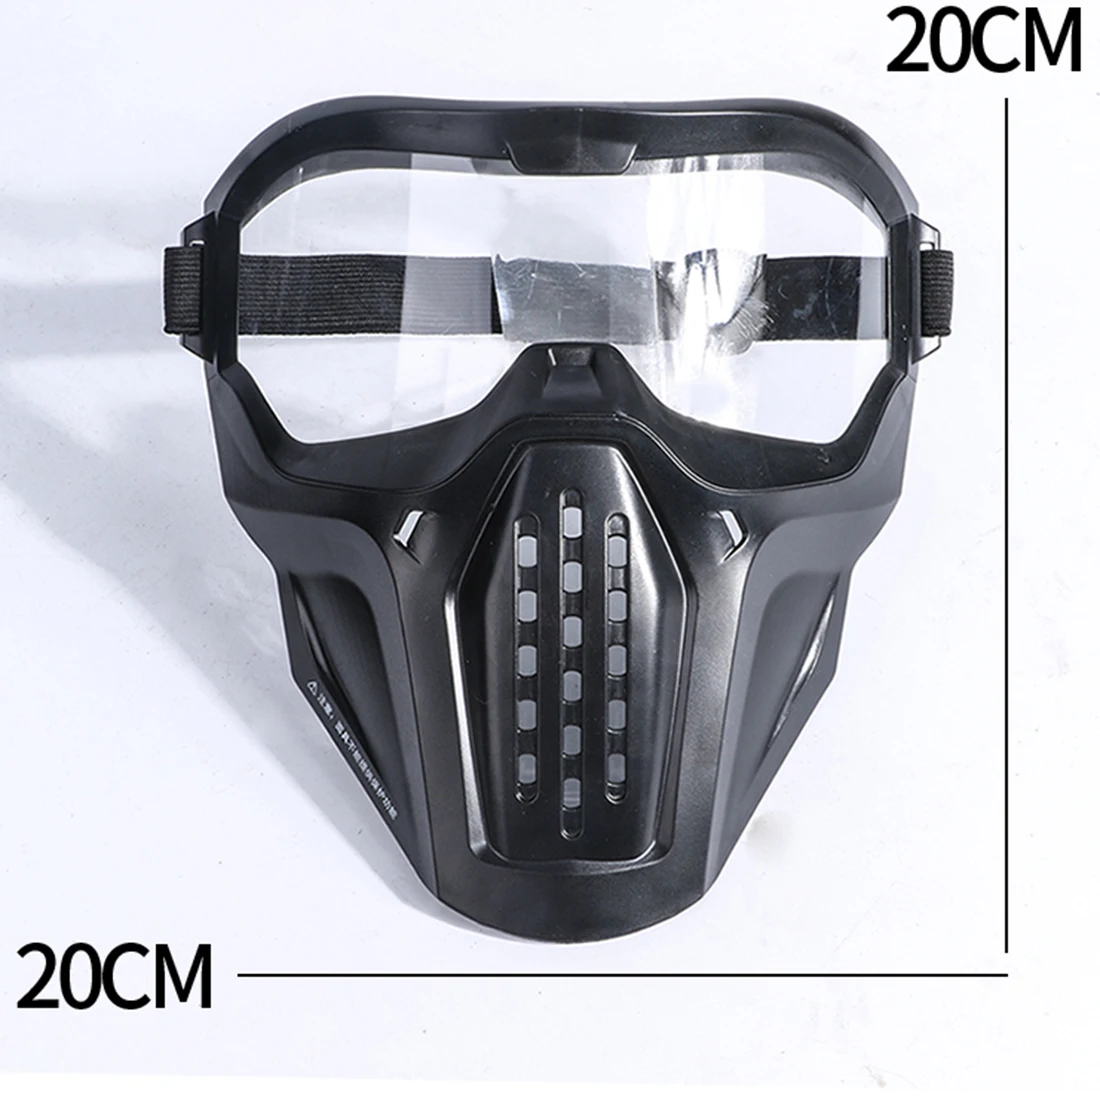 Мягкие пенные дротики PC линзы маска для лица водные гелевые бусинки защитная маска для охоты на открытом воздухе пейнтбольное оборудование высокое качество